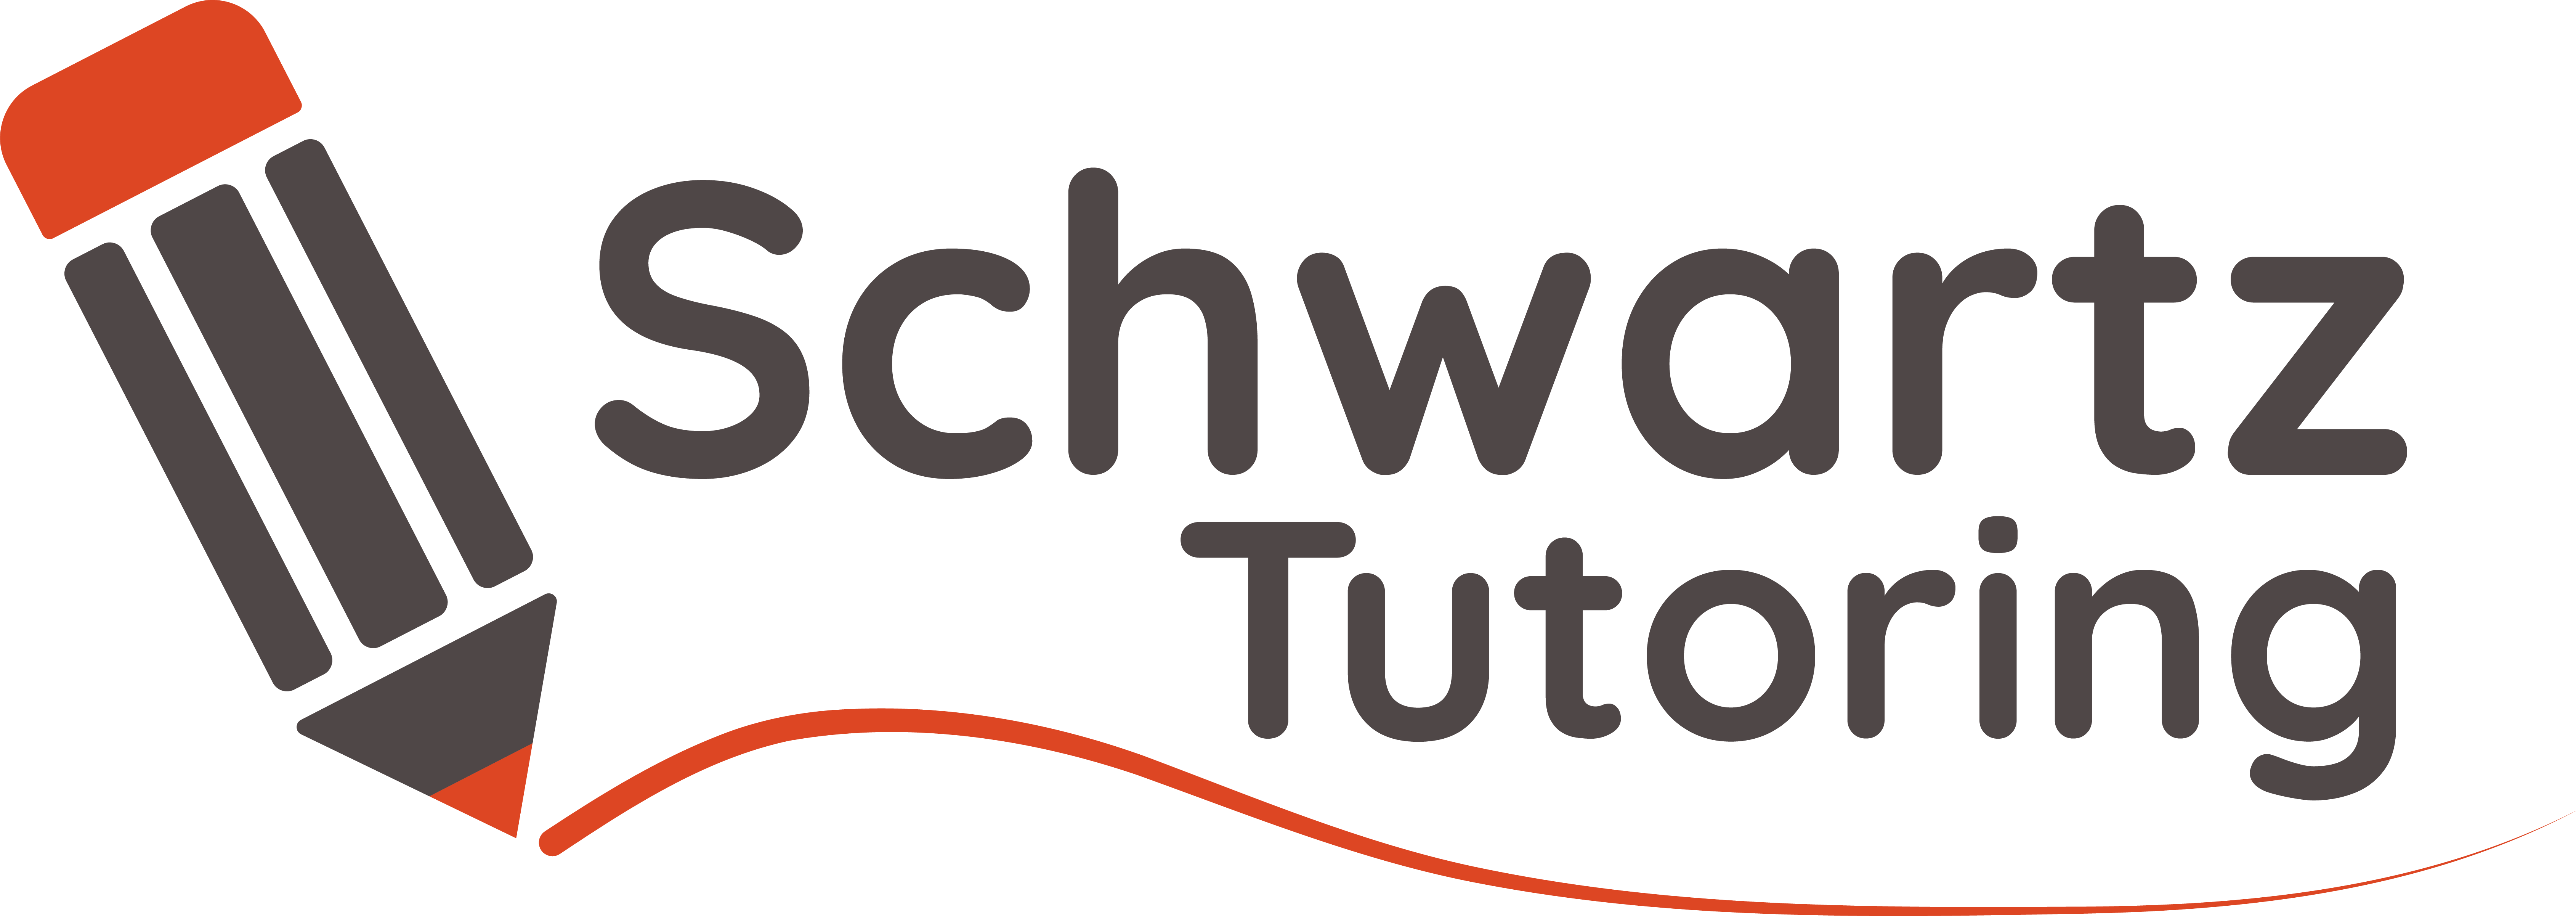 Schwartz Tutoring logo